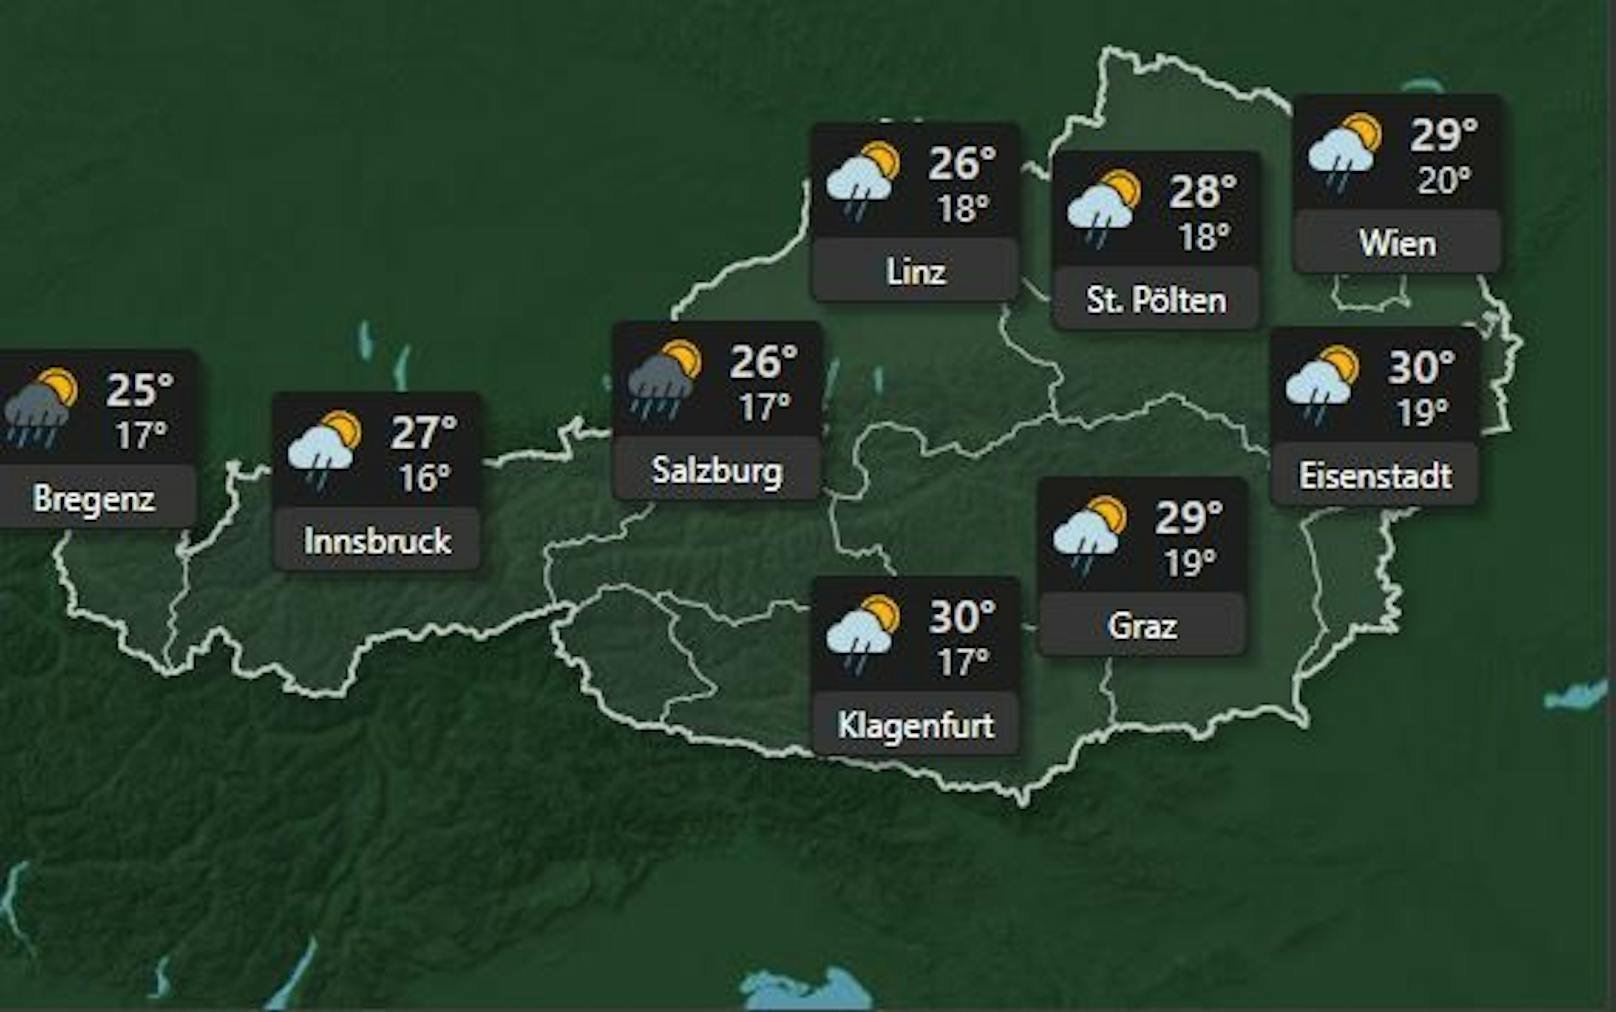 <strong>Dienstag, 5. Juli:</strong> Die Hitze bleibt am Dienstag, die Gewitter rollen allmählich über ganz Österreich im Laufe des Tages. In Bregenz und Salzburg ist mit schweren Gewittern und Regenschauern zu rechnen. die Temperaturen steigen weiterhin auf <b>30 Grad. <strong>Nur in Bregenz sinkt die Temperatur&nbsp;auf 25 Grad.</strong></b>